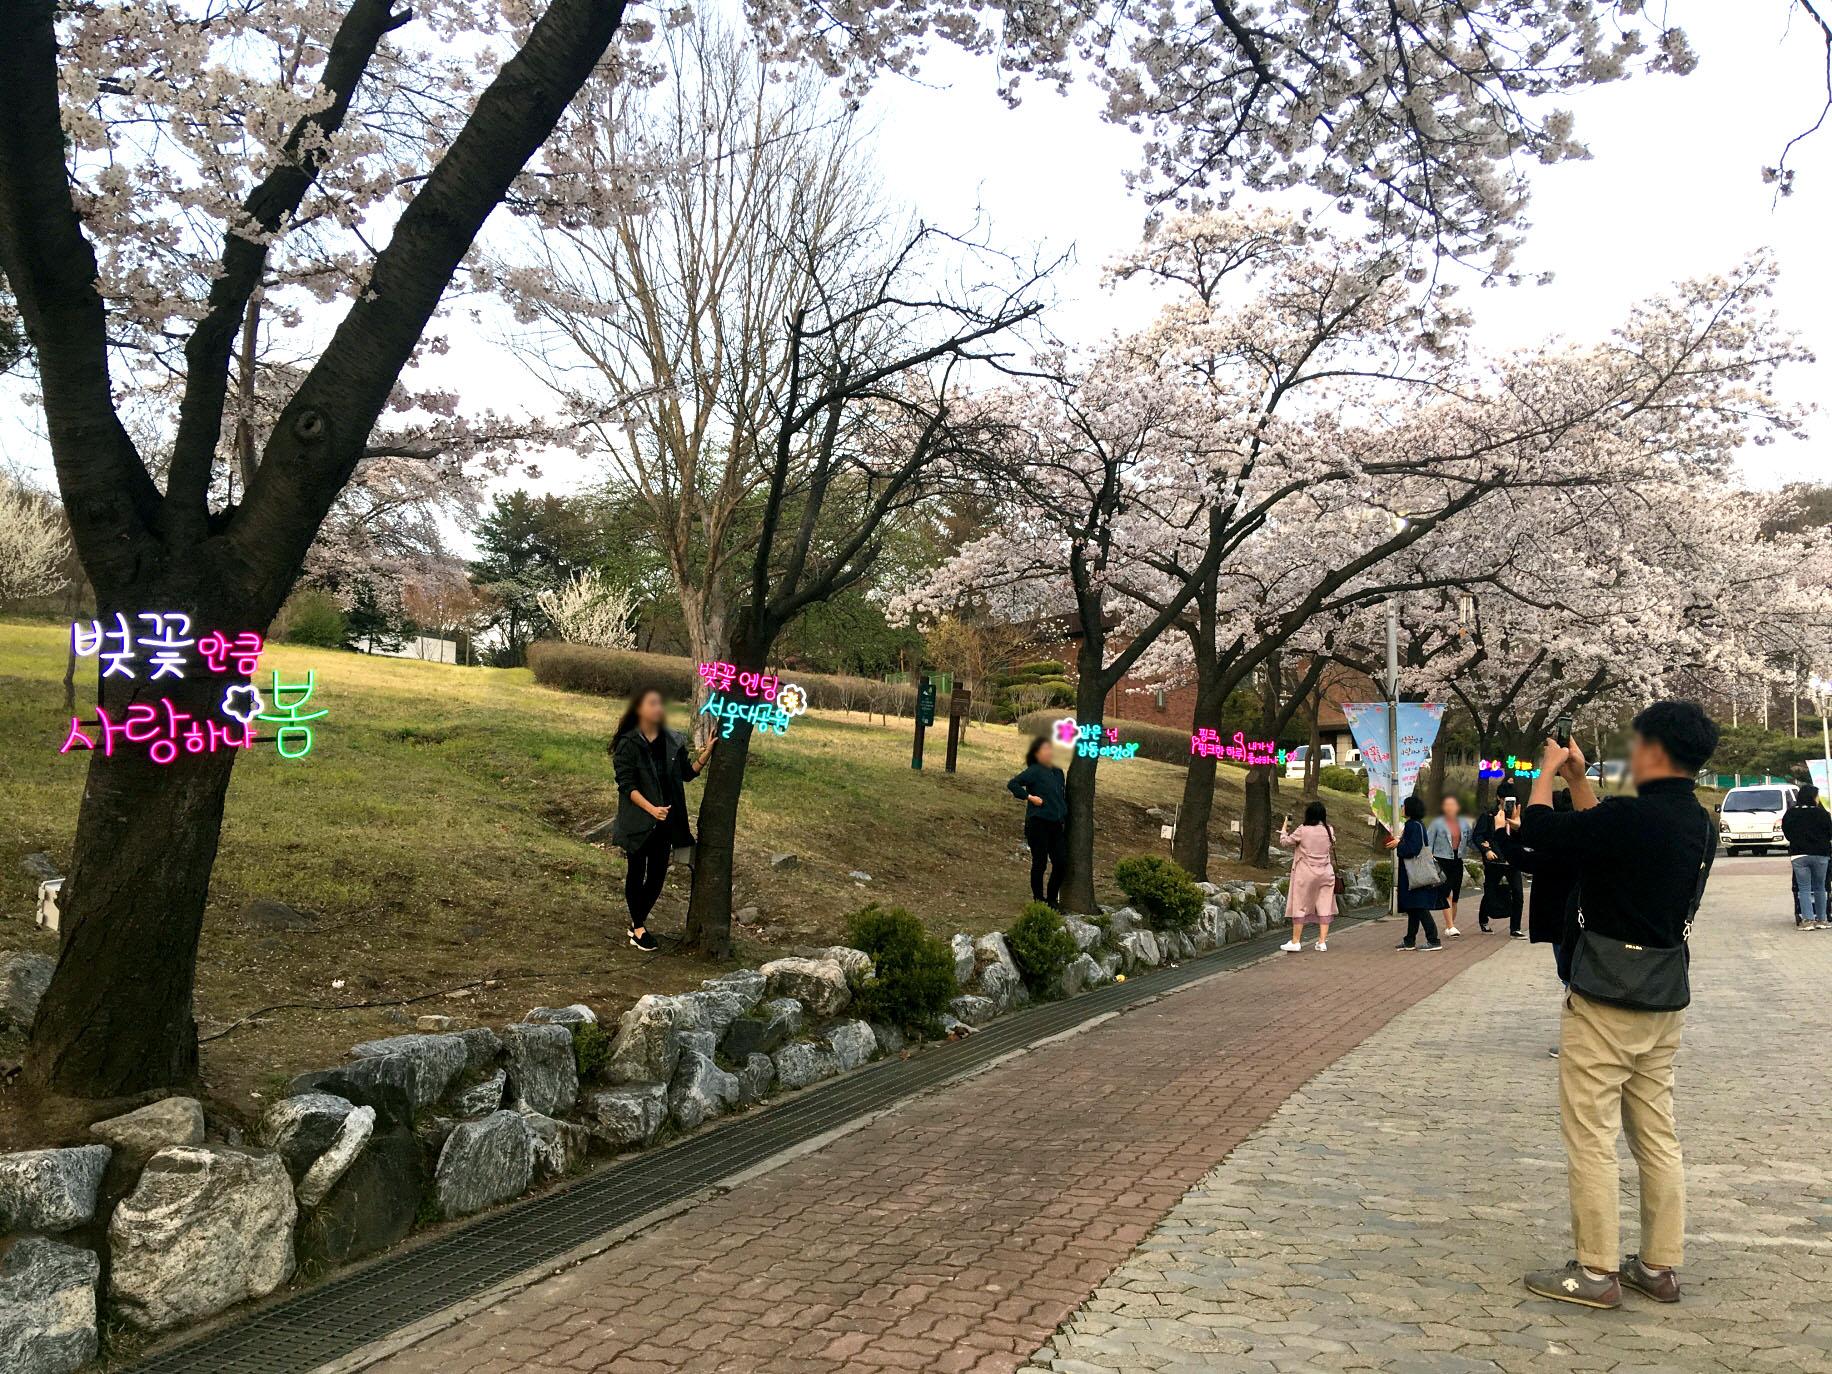 벚나무 네온 등과 함께 사진을 찍고 있는 시민들